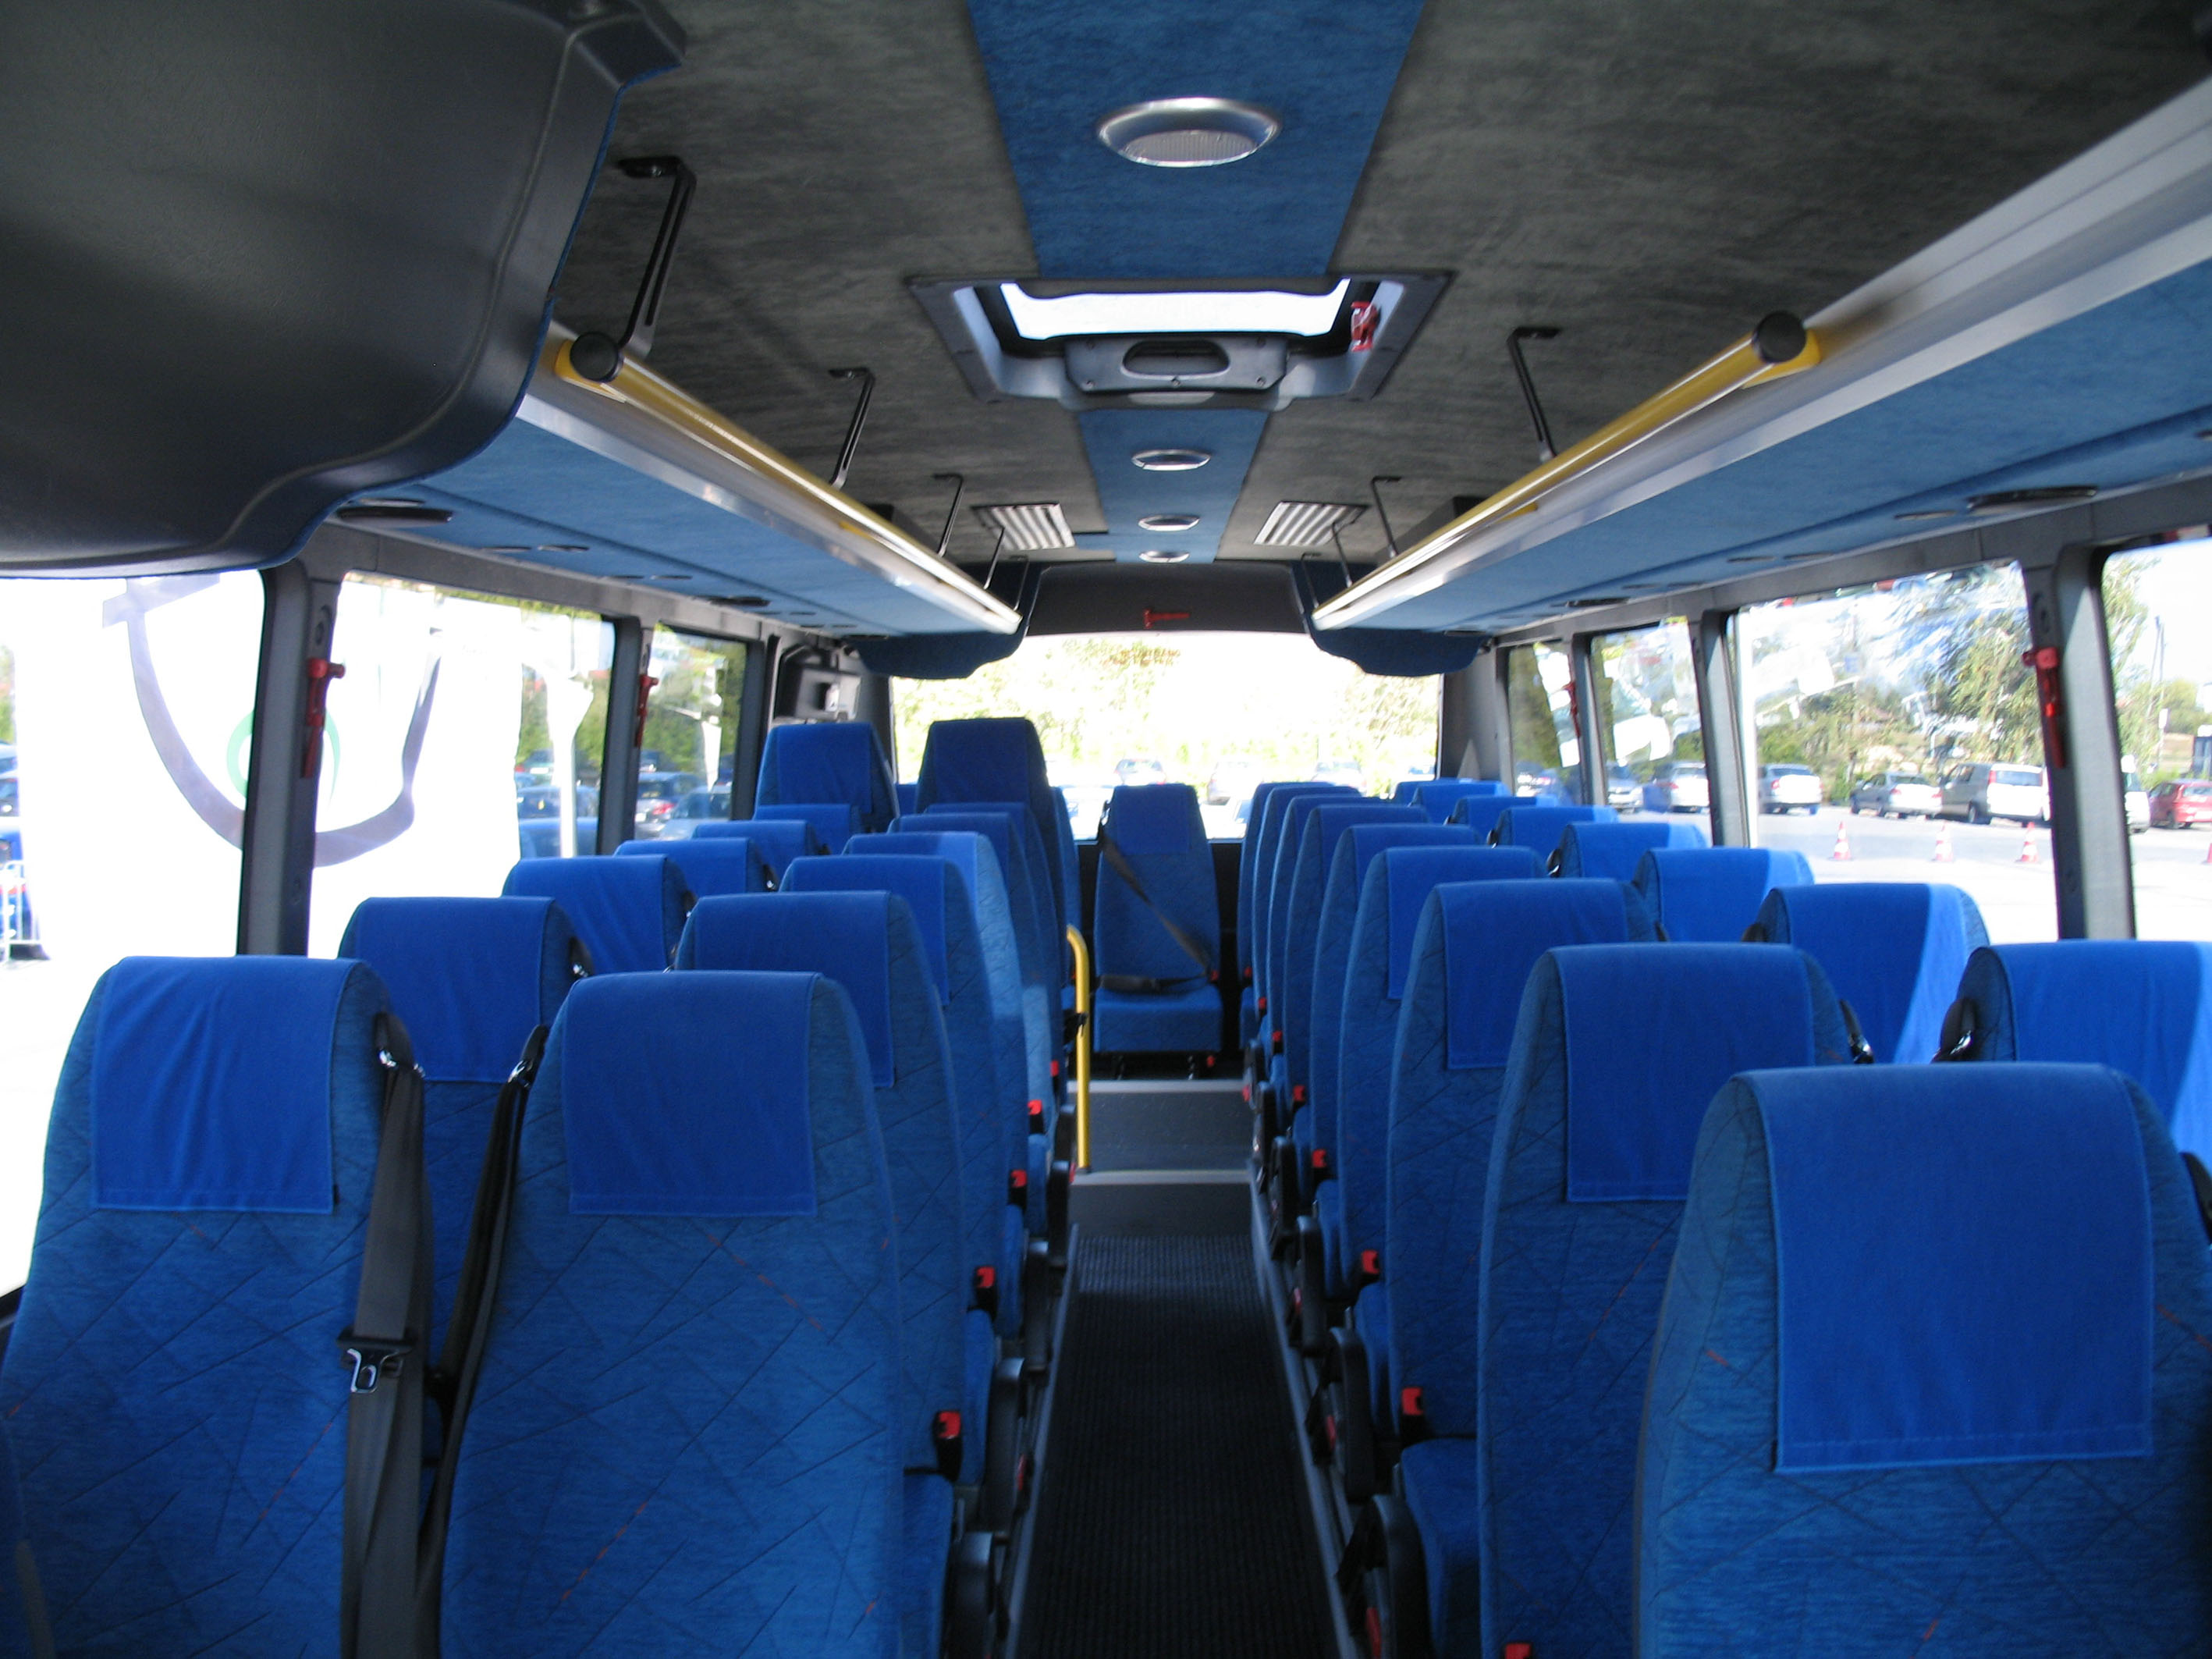 File:Automet Apollo school bus interior - rear.jpg - Wikimedia Commons